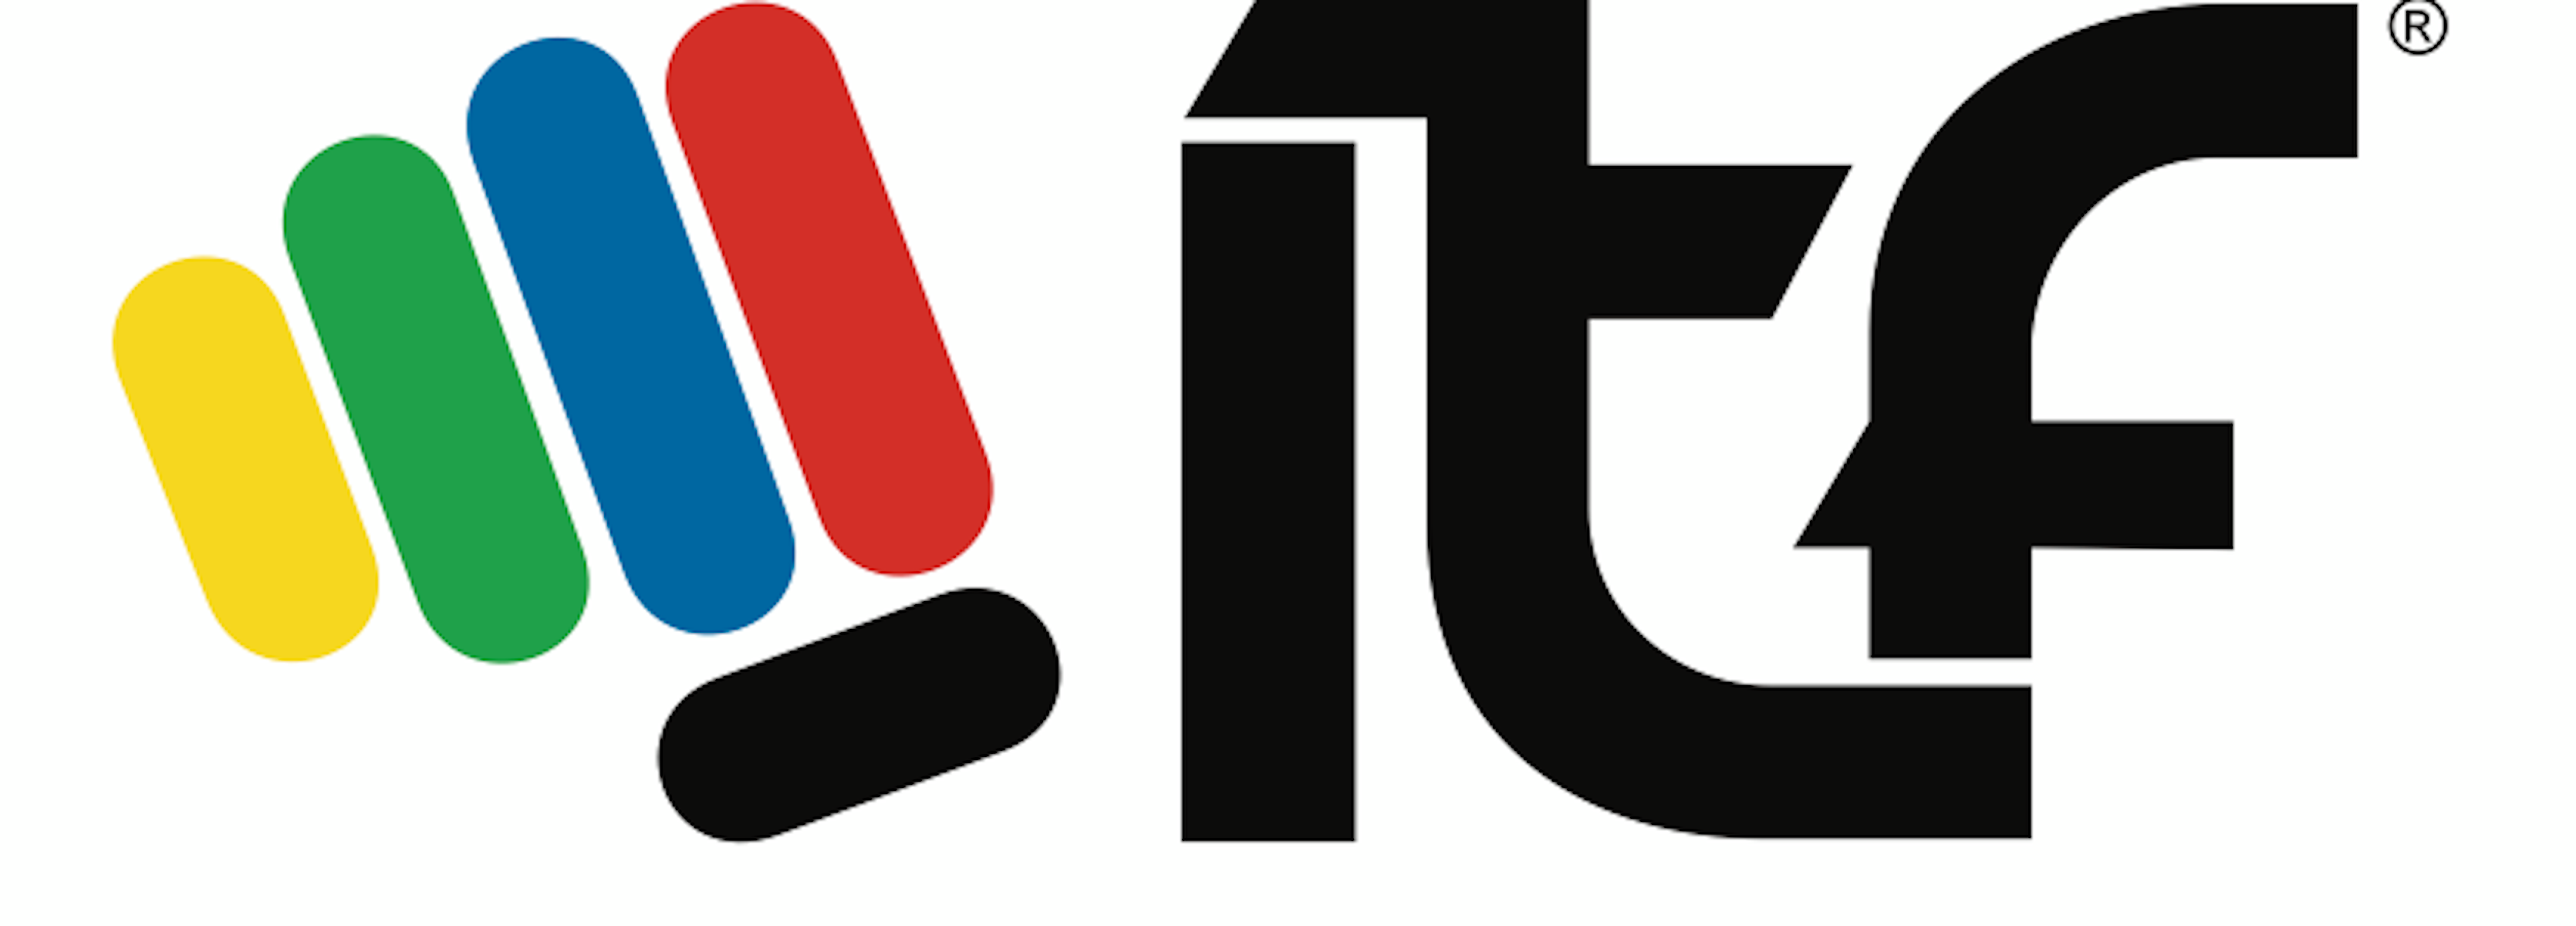 BIG_ITF_logo